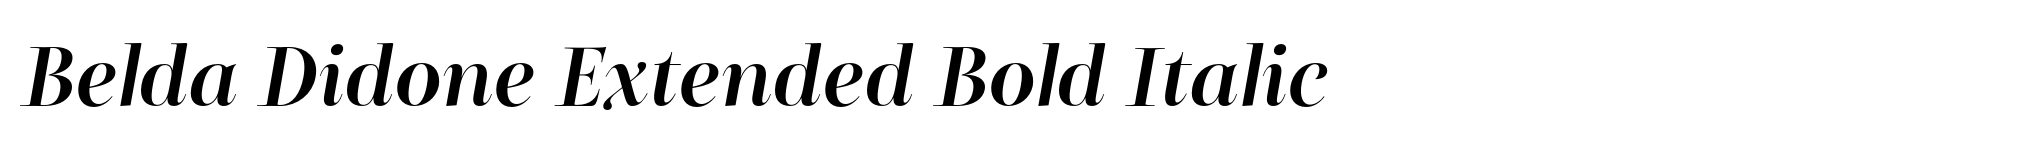 Belda Didone Extended Bold Italic image